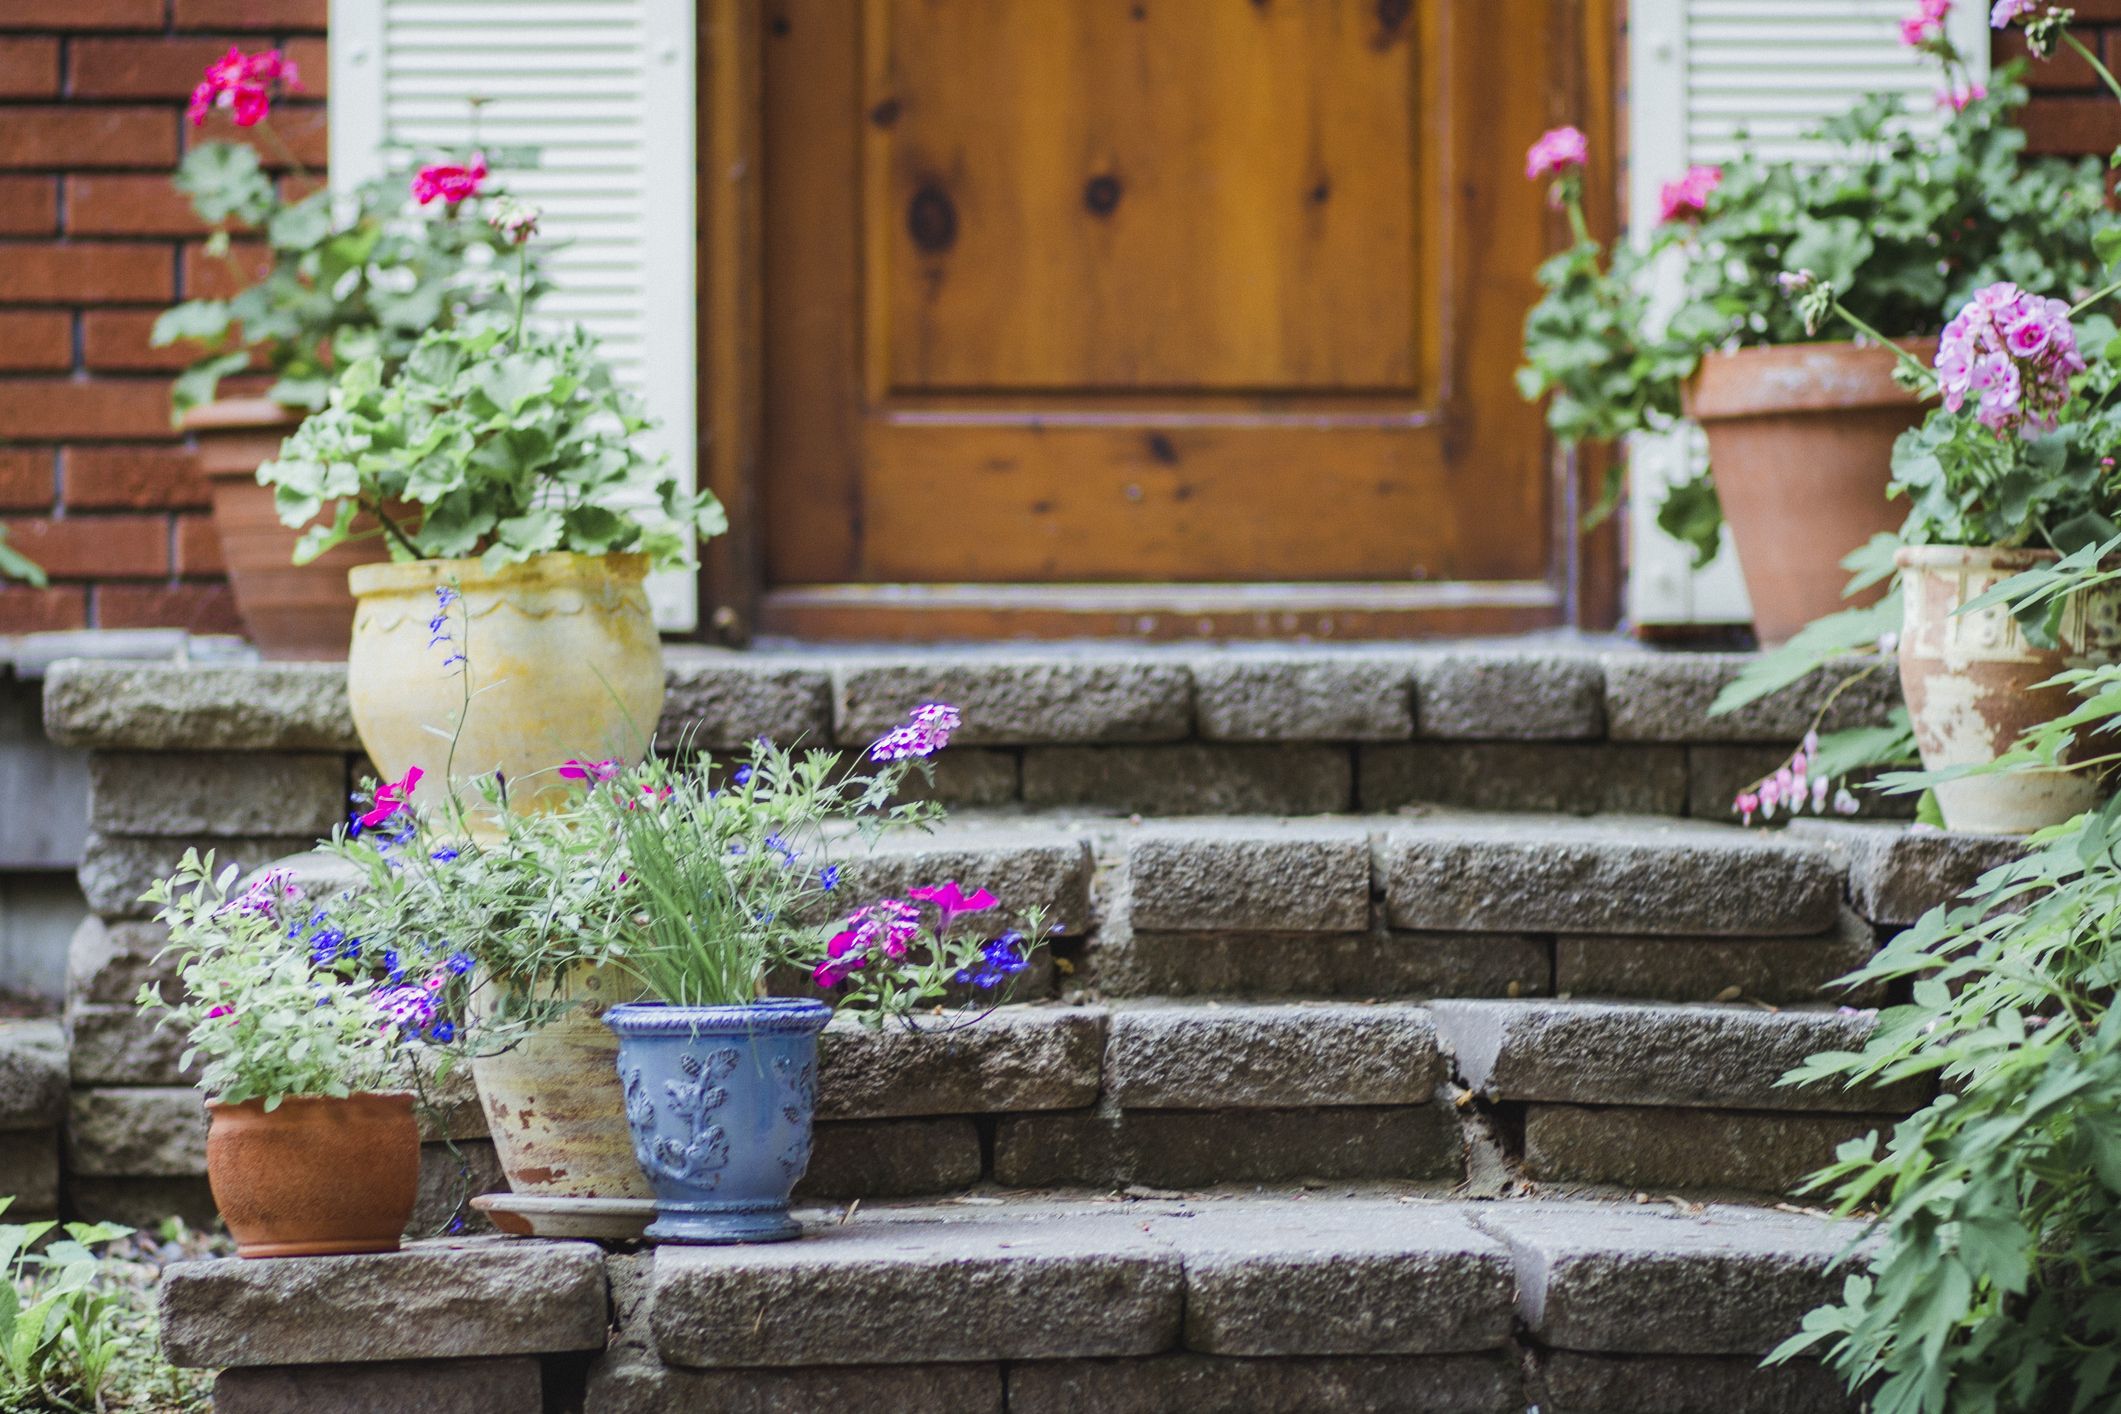  Best Front Door Plants Plants For Your Front Door - Front Of House Plant Ideas Uk